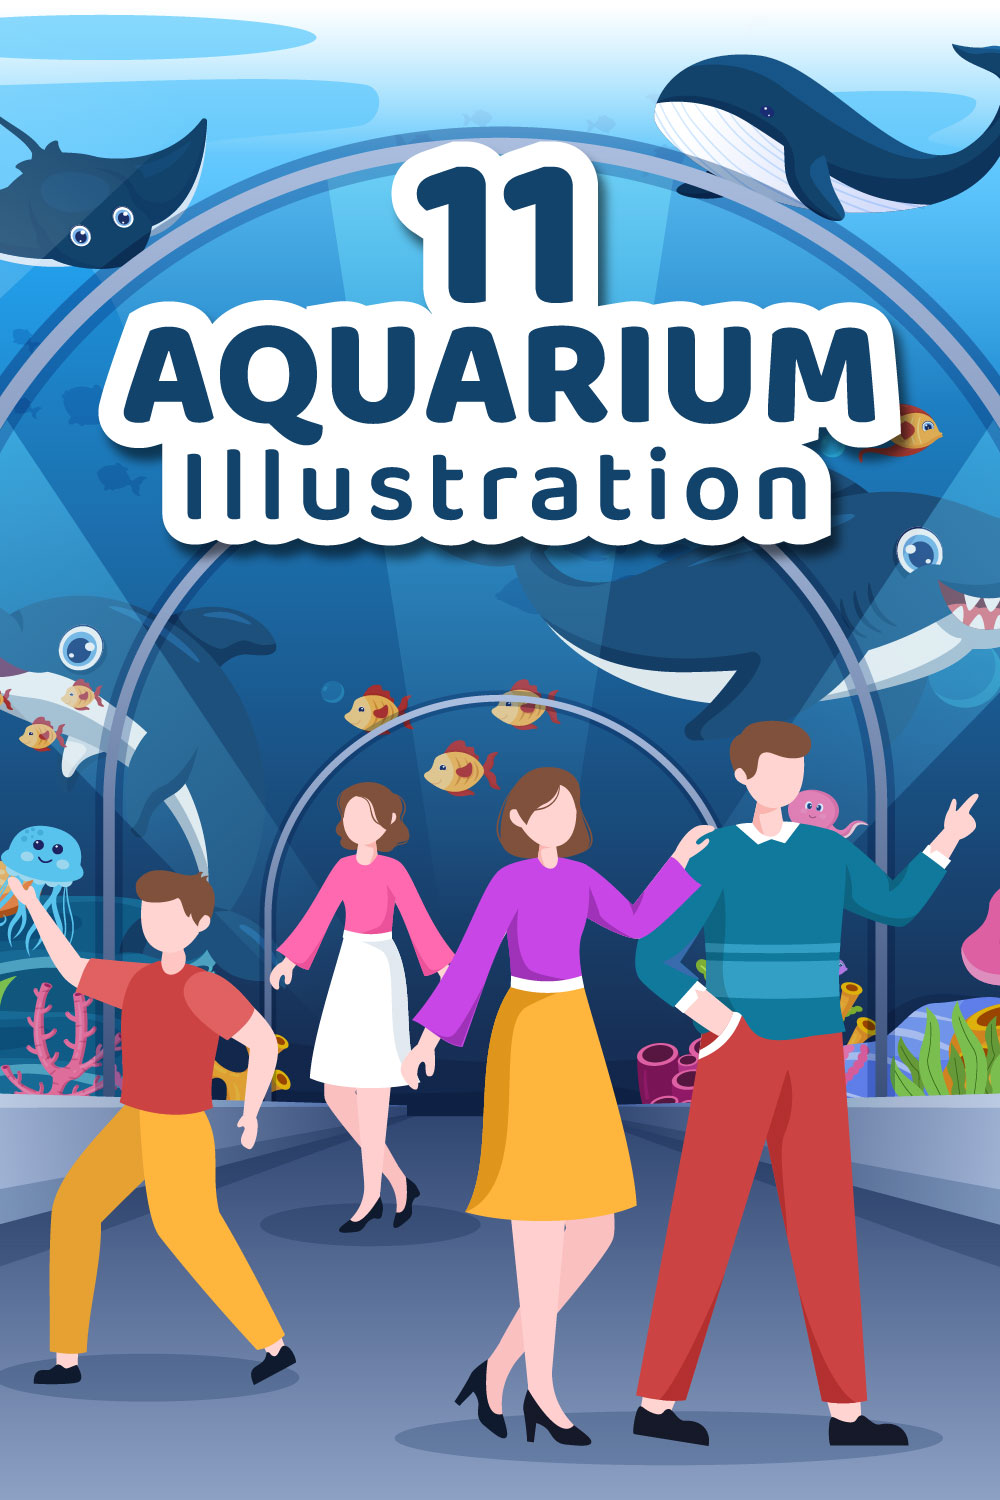 11 Aquarium Flat Illustration pinterest image.